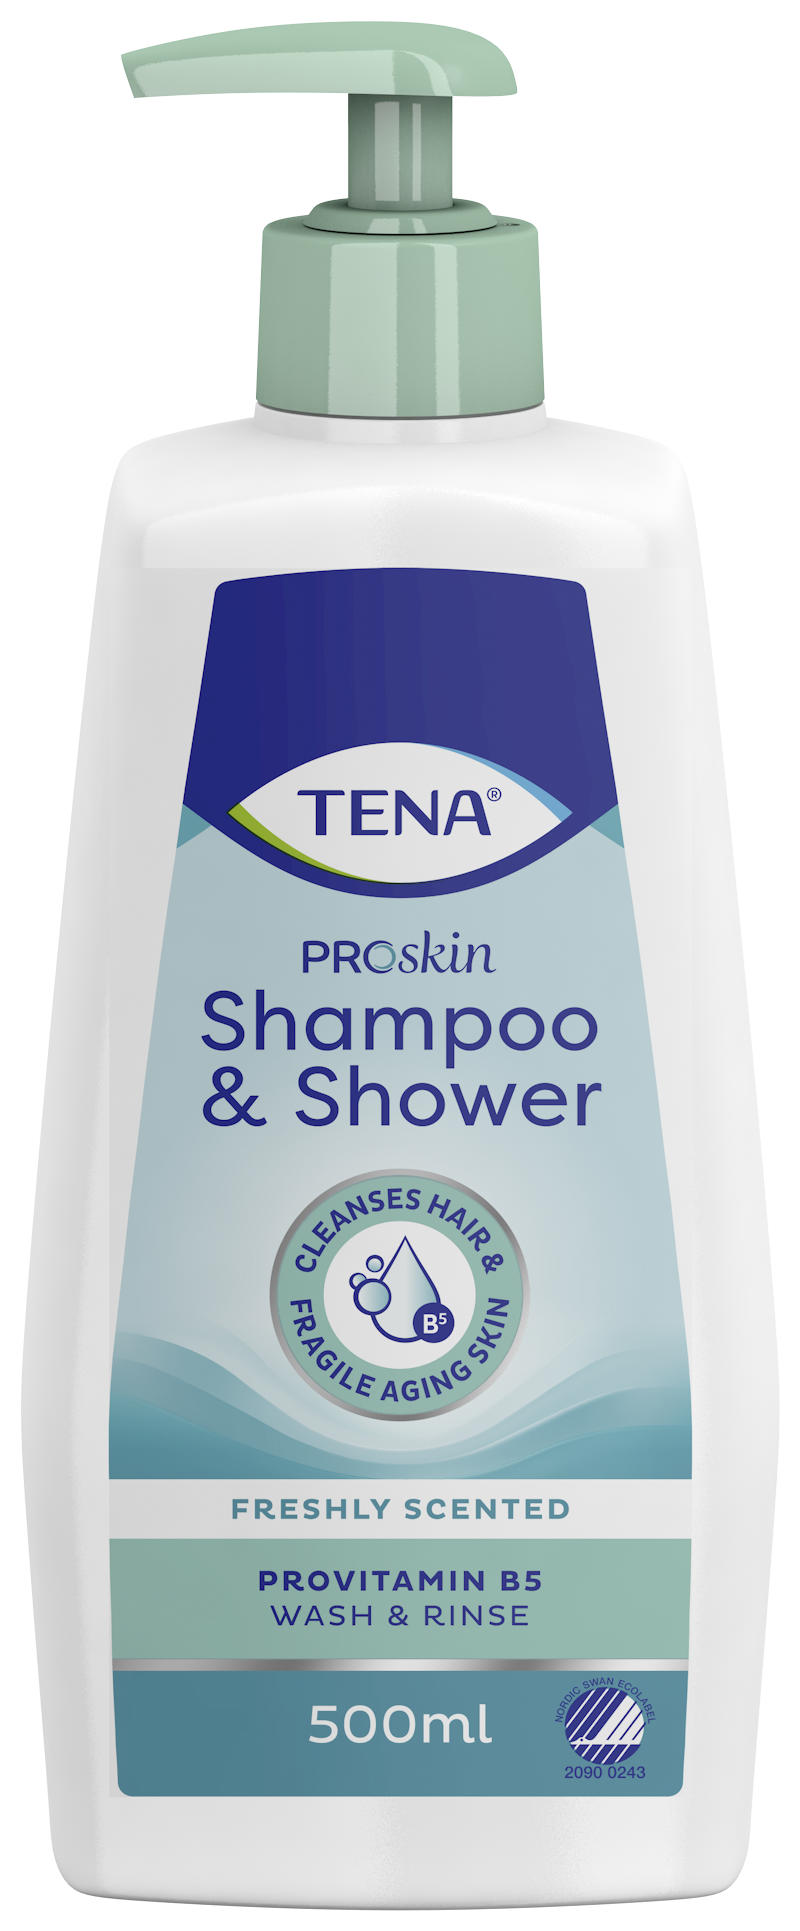 Imagem do produto TENA ProSkin Shampoo & Shower